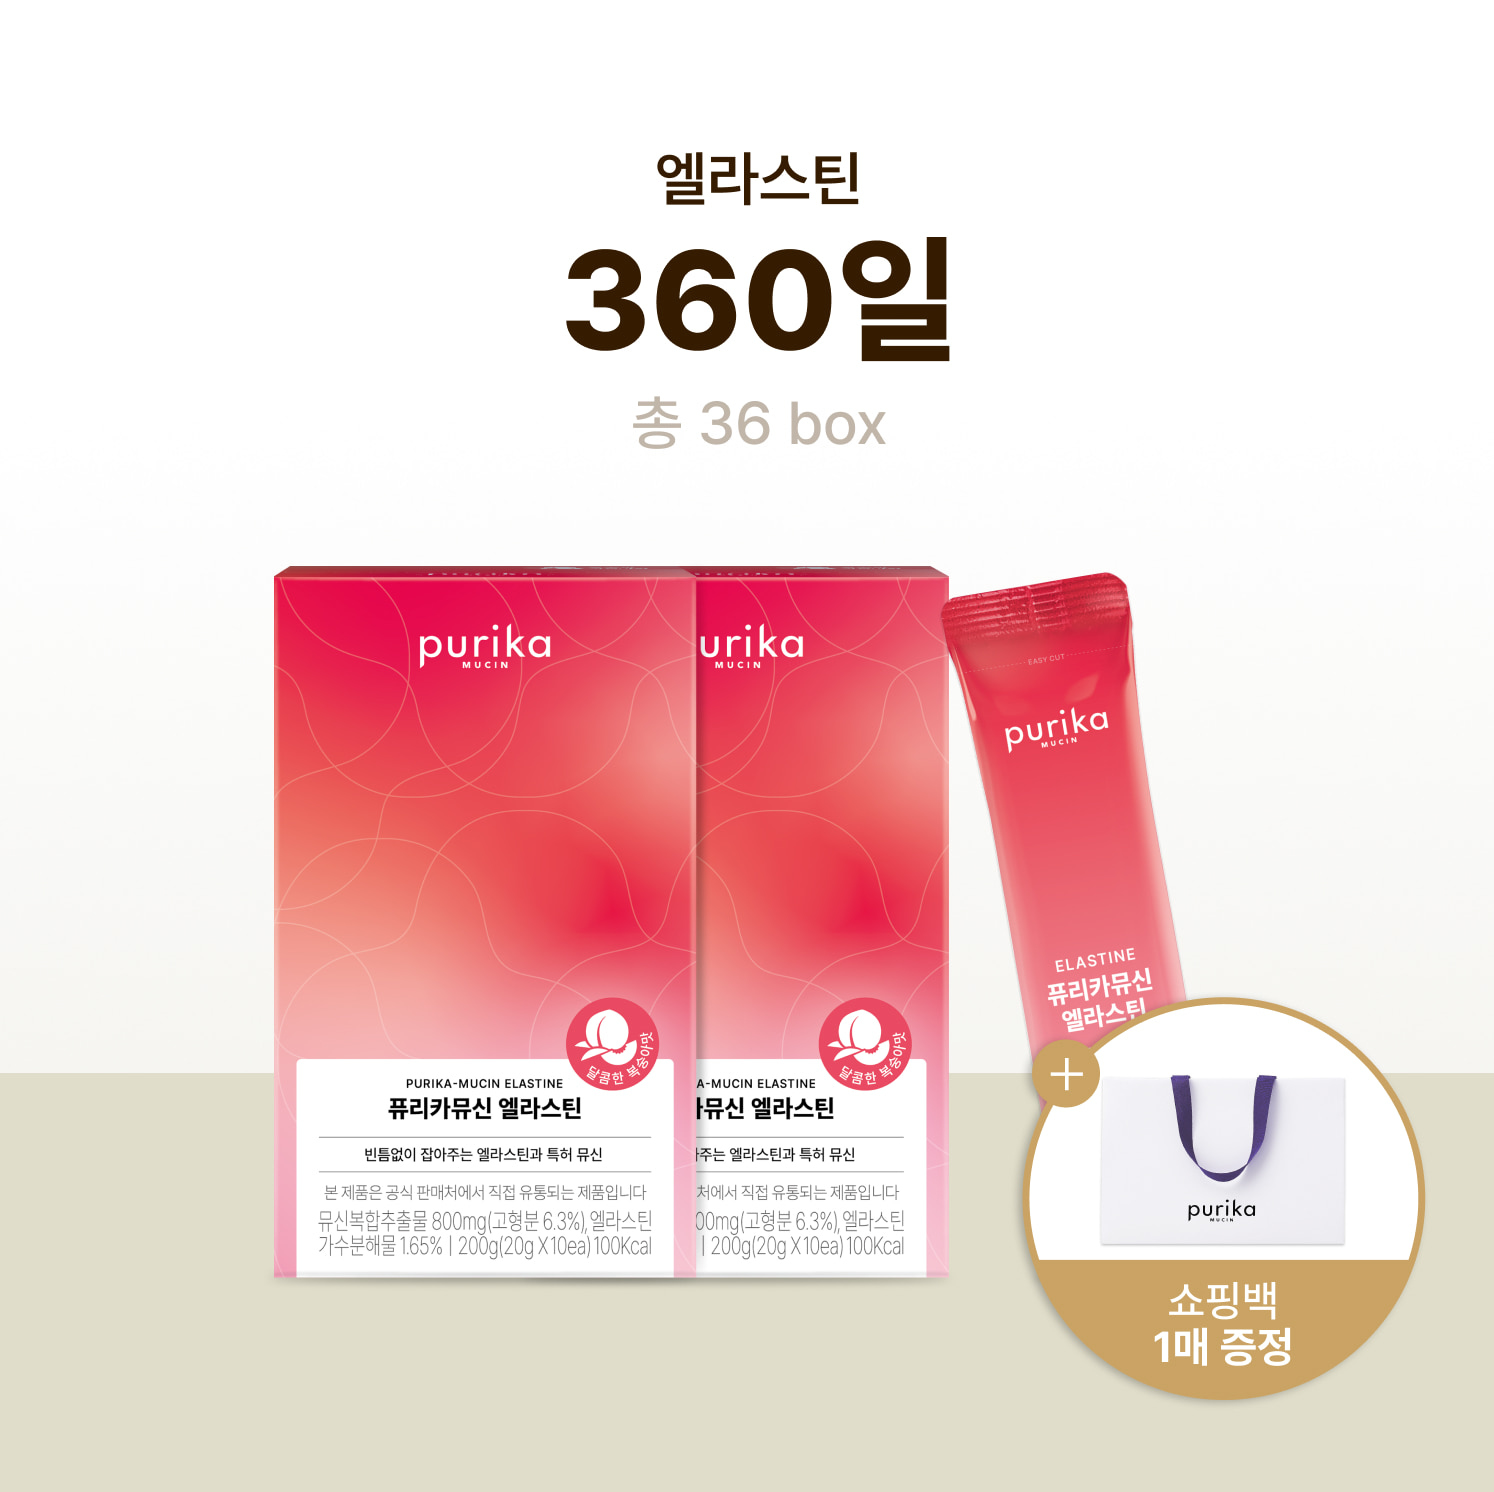 뮤신 엘라스틴 (36box, 360일) + 쇼핑백 증정(1매)